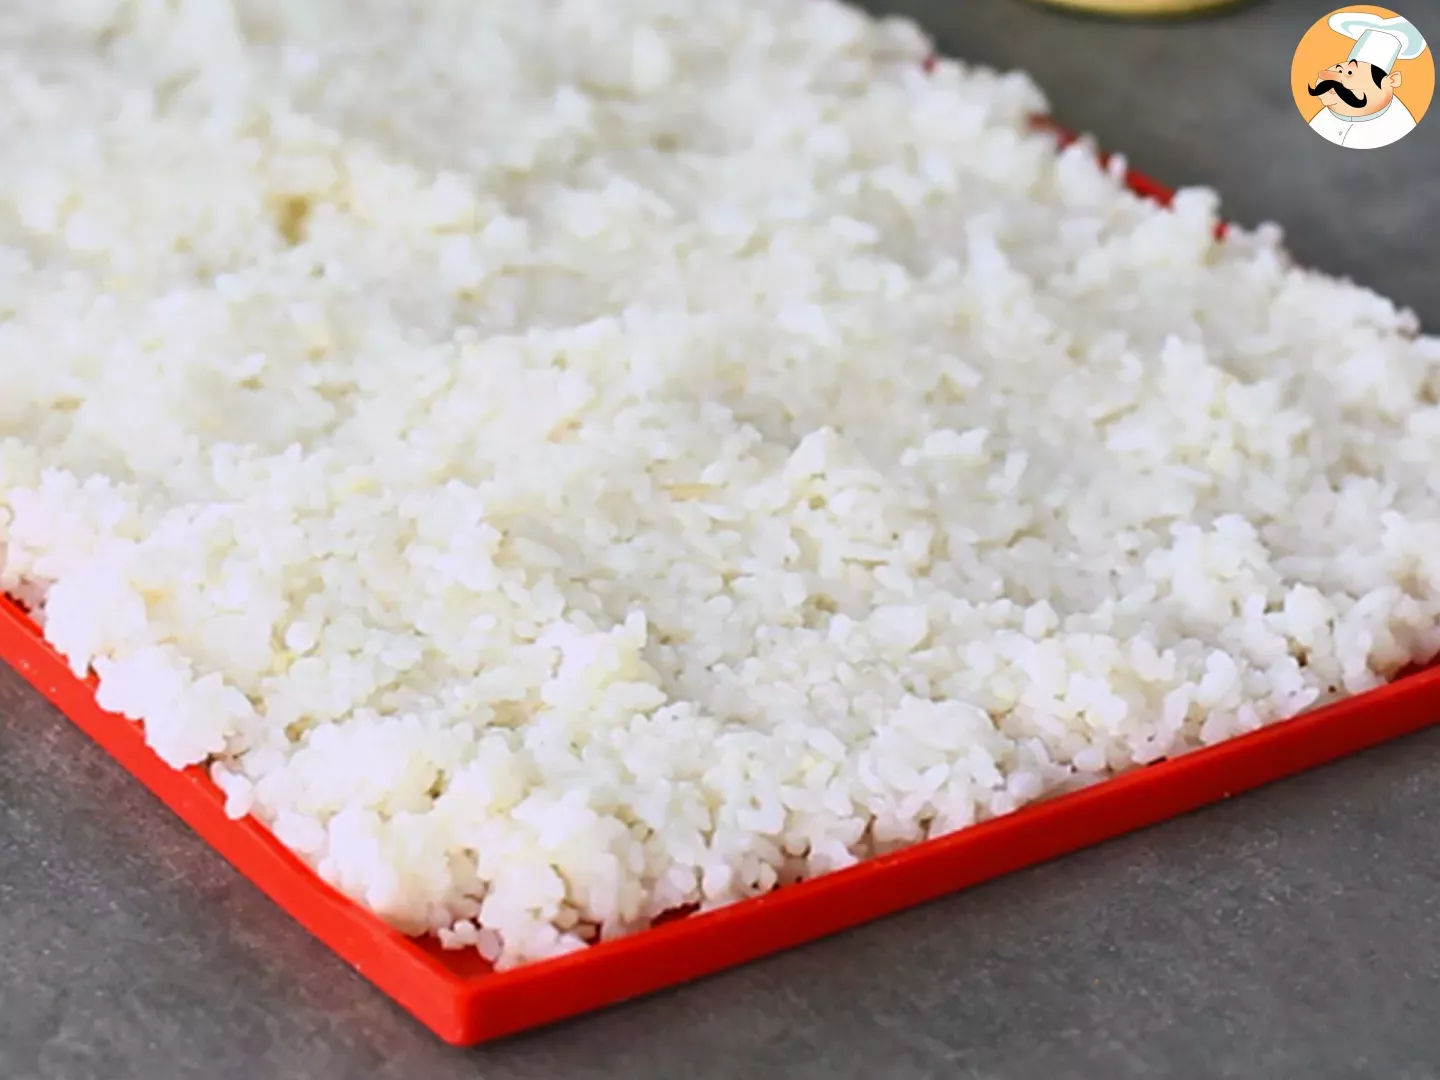 Come preparare il riso per sushi: il procedimento spiegato passo a